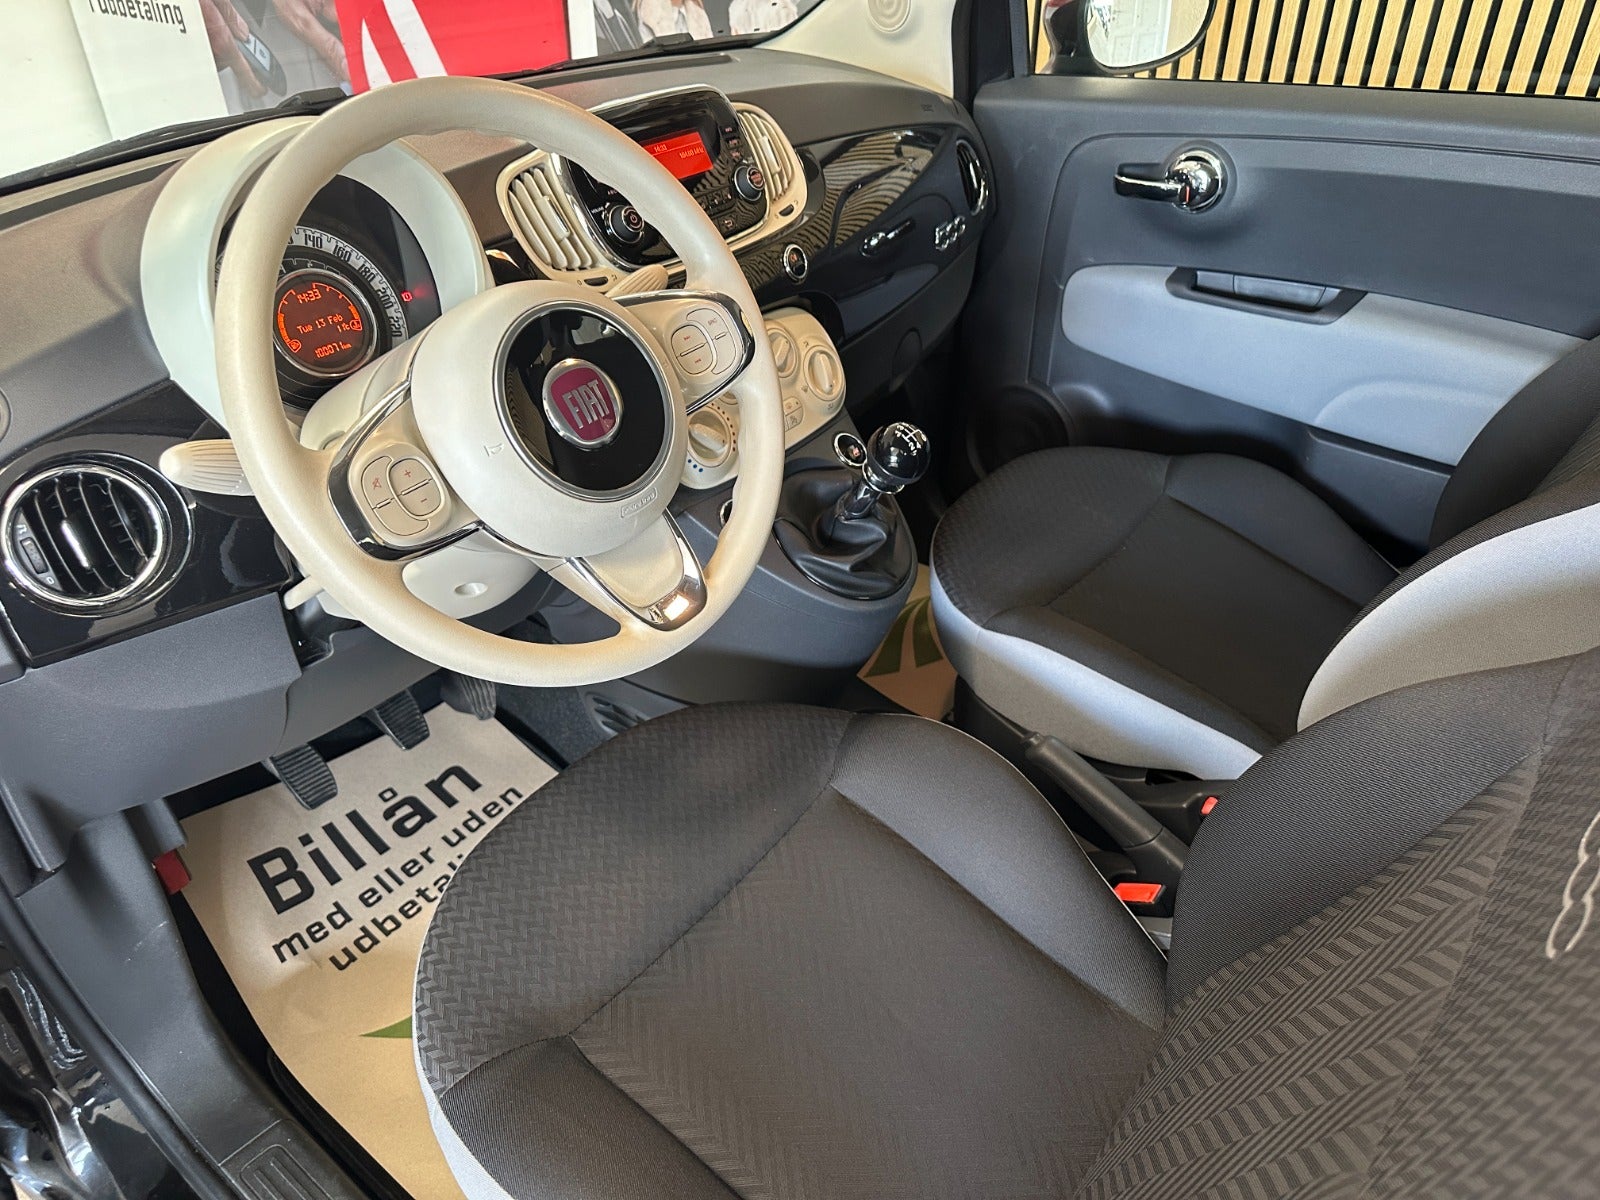 Fiat 500 2017